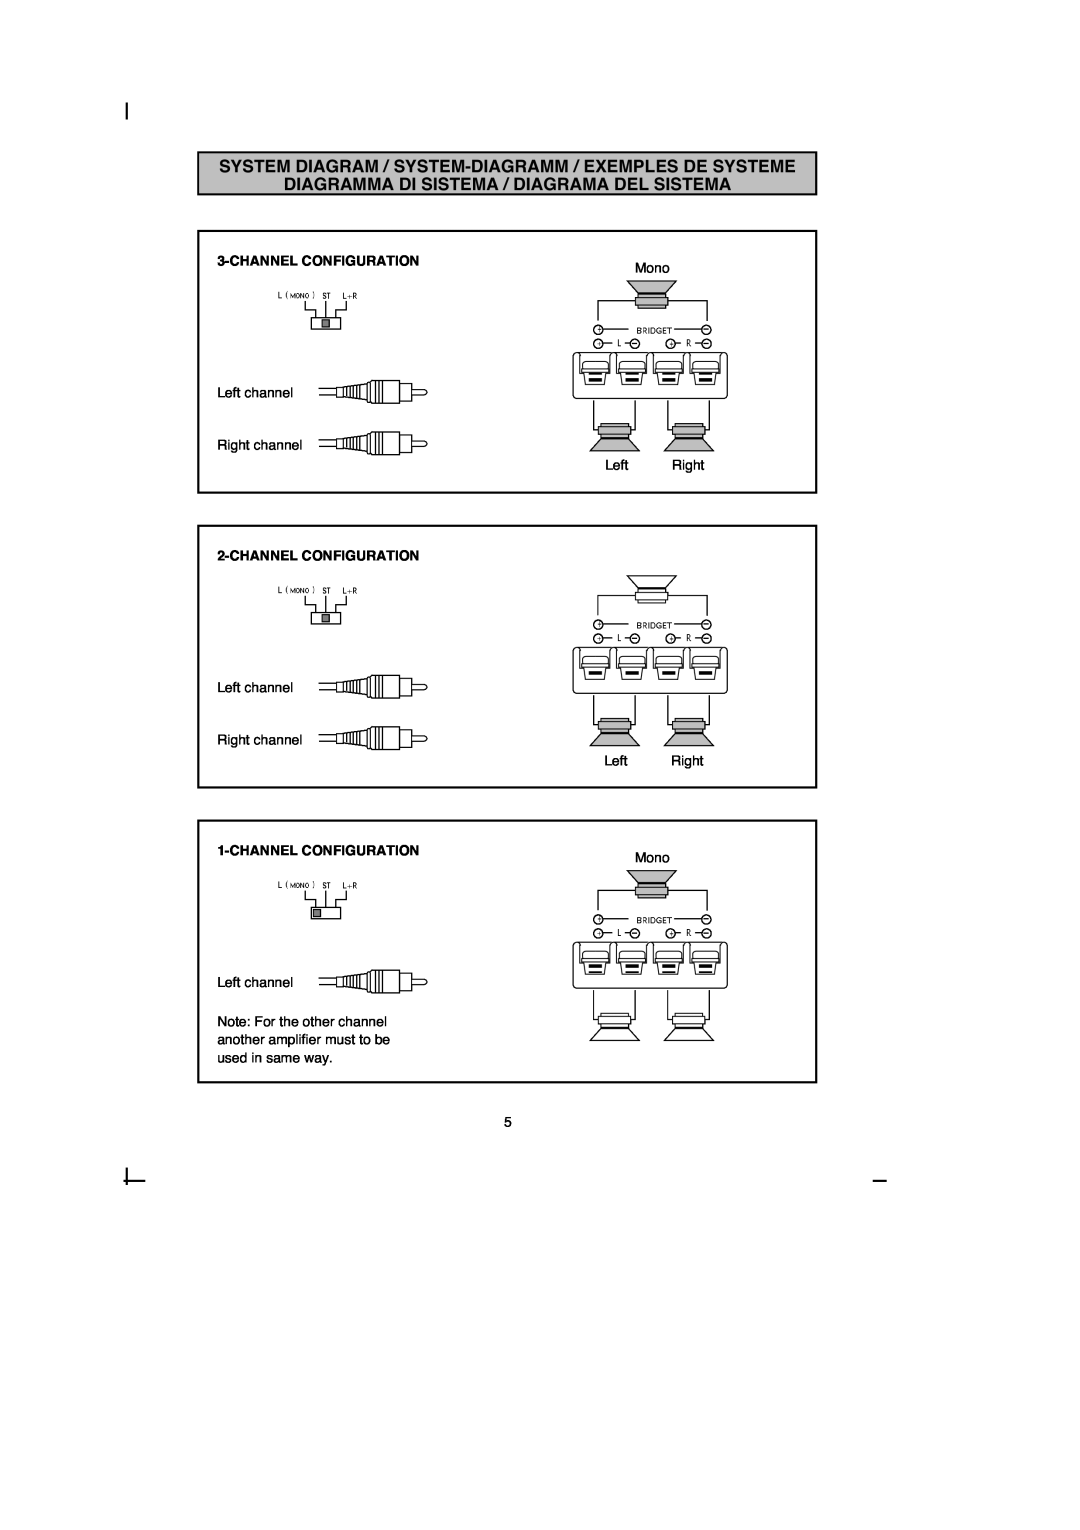 Macrom 42.15 Diagramma Di Sistema / Diagrama Del Sistema, Channelconfiguration, Left channel Right channel Left Right 